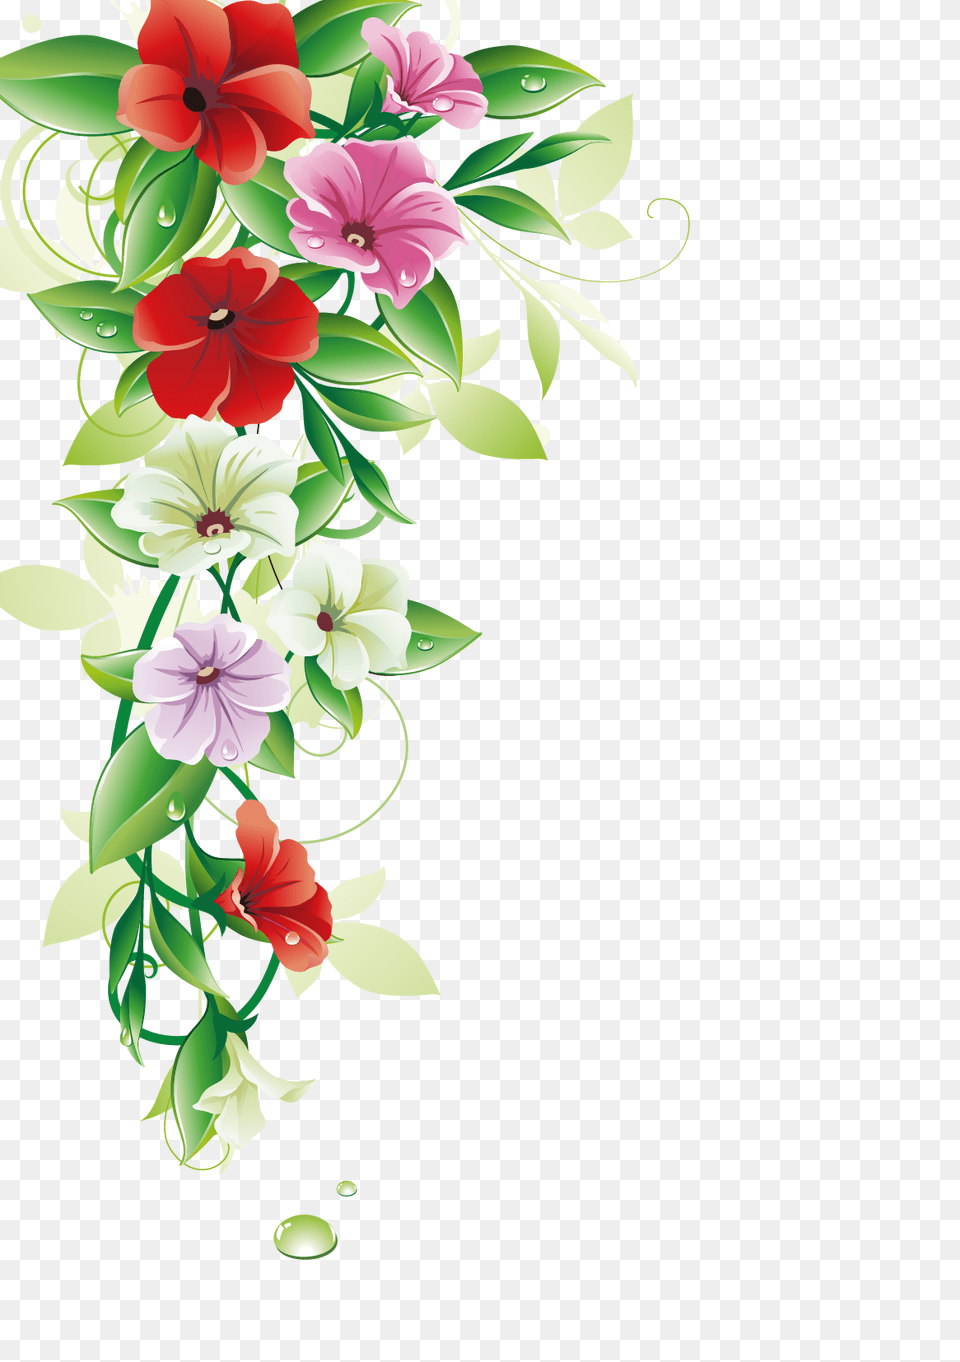 Download 1166 X 1654 9 Flower Border Vector Image Border Flower Design, Art, Floral Design, Graphics, Pattern Png